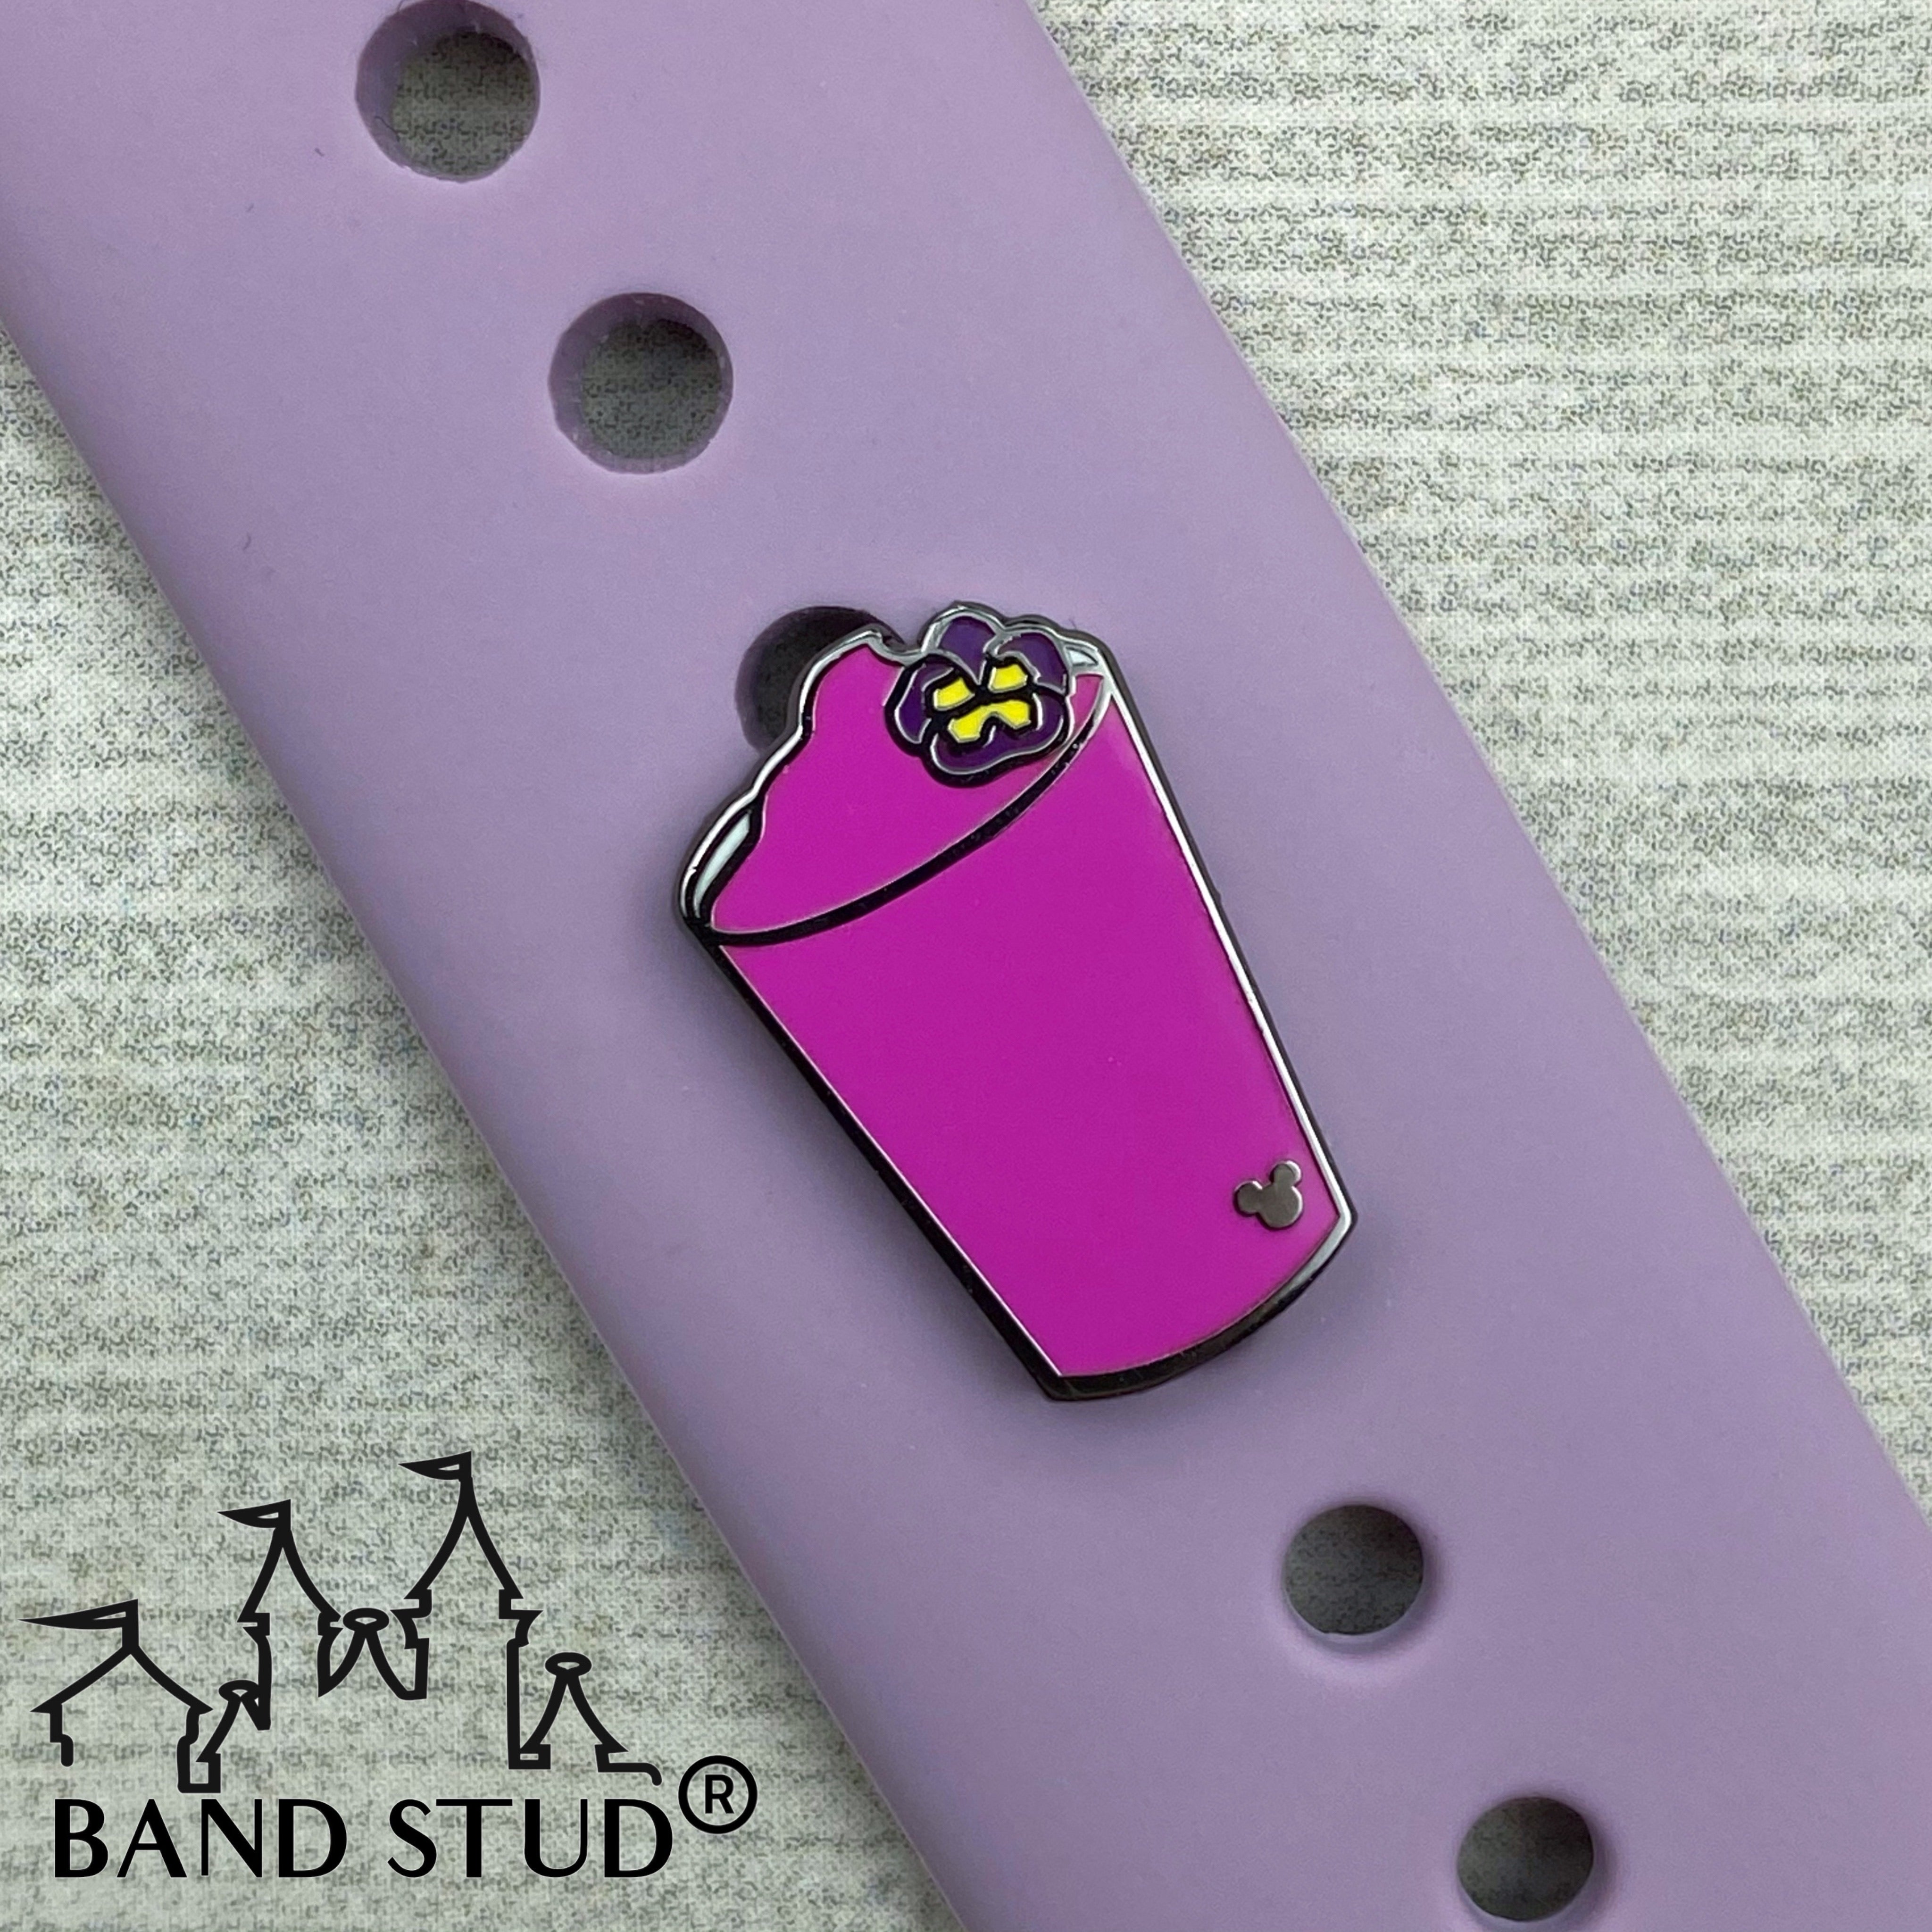 Band Stud® - Flower and Garden - Violet Lemonade MARKDOWN